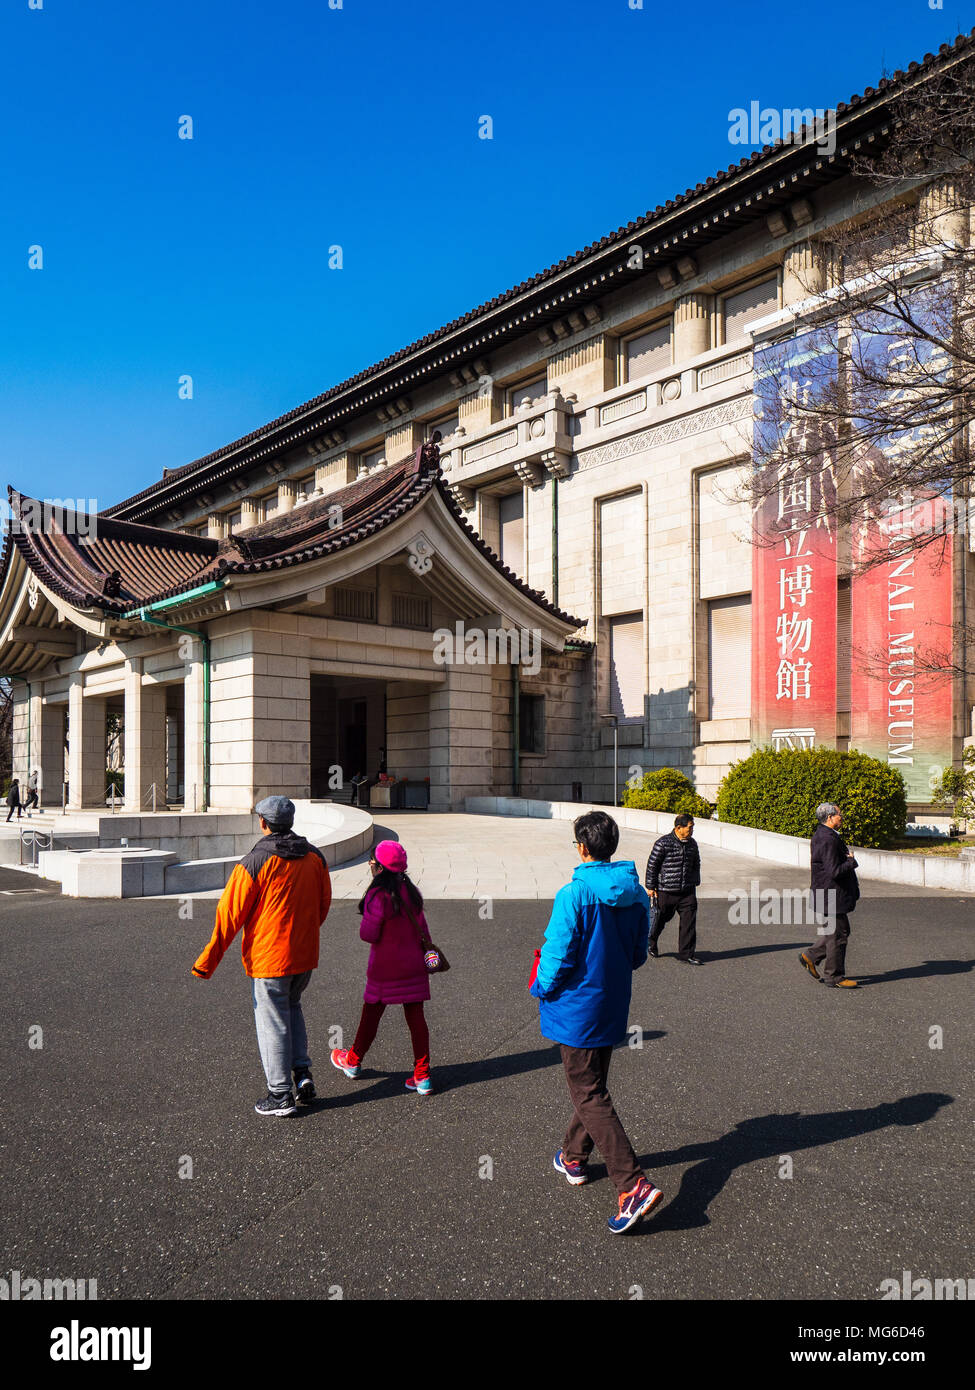 Museo Nazionale di Tokyo nel Parco di Ueno, Tokyo Giappone. Il Museo Nazionale di Tokyo, il più antico Museo Nazionale del Giappone, fondato nel 1872. Foto Stock